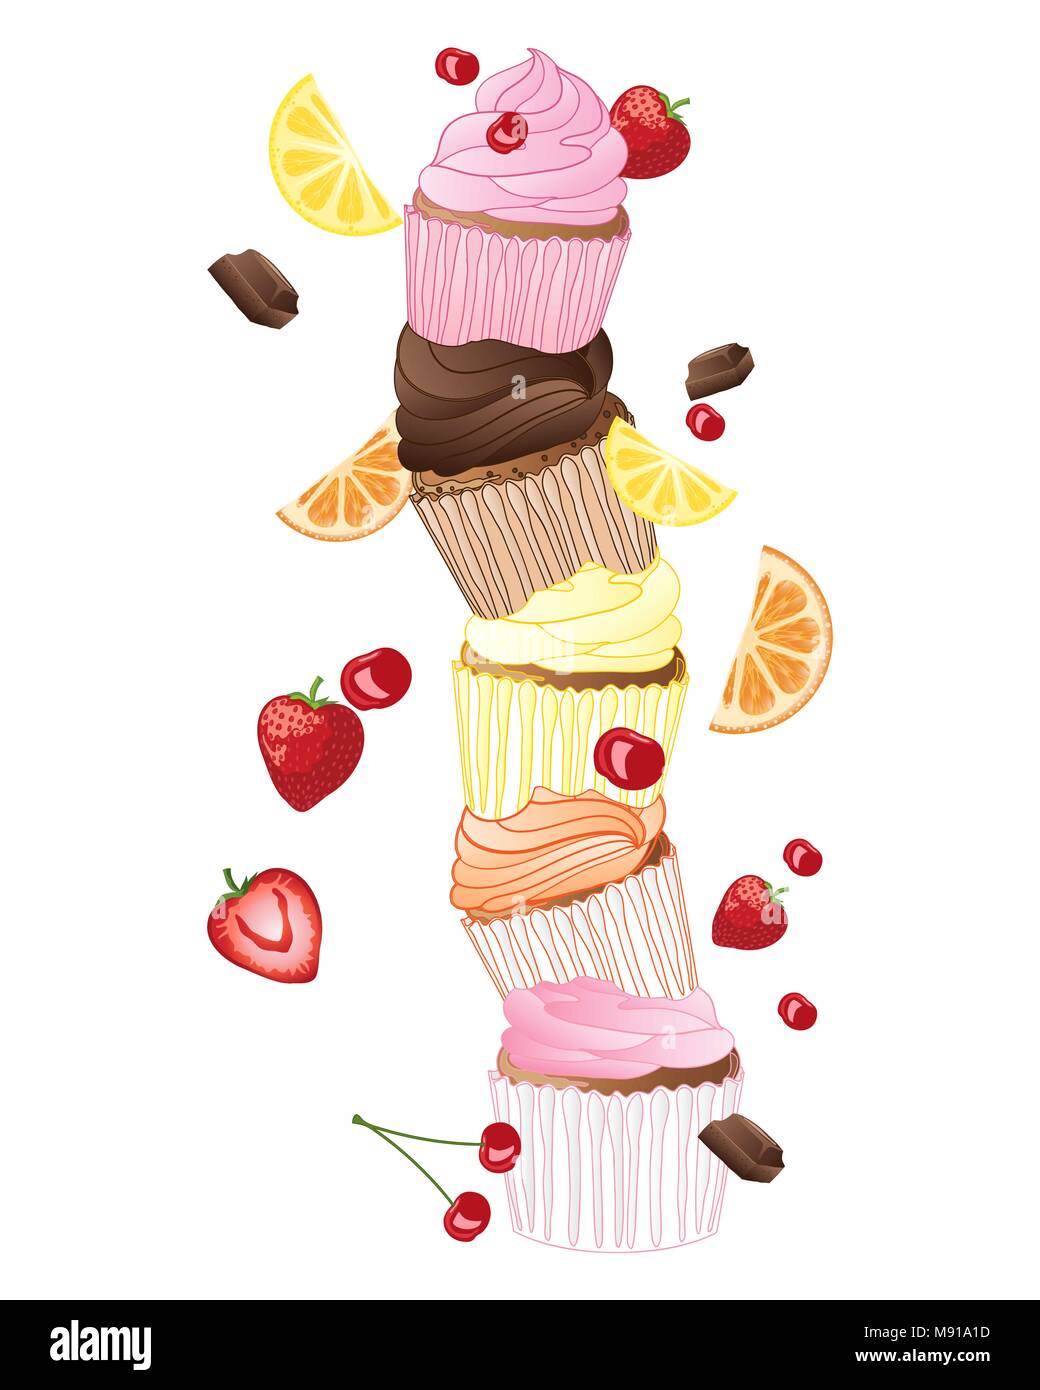 Une illustration d'une pile de cup cakes dans différentes saveurs de fruits et décorer le chocolat sur fond blanc Illustration de Vecteur